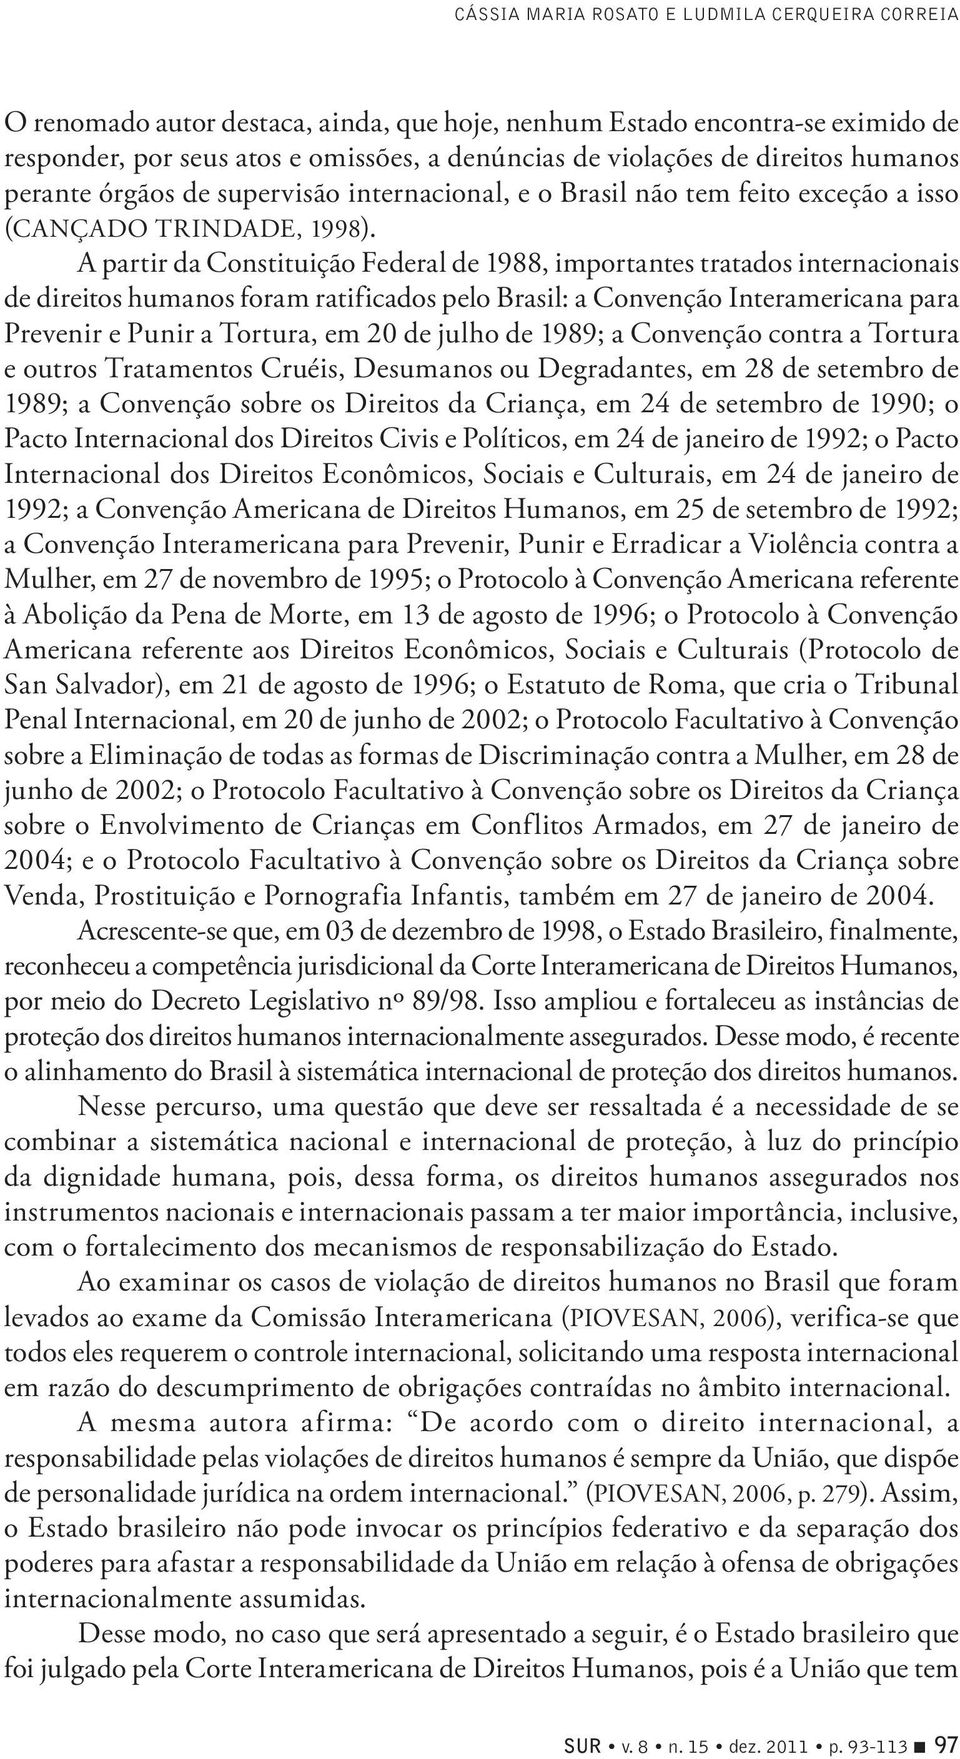 A partir da Constituição Federal de 1988, importantes tratados internacionais de direitos humanos foram ratificados pelo Brasil: a Convenção Interamericana para Prevenir e Punir a Tortura, em 20 de